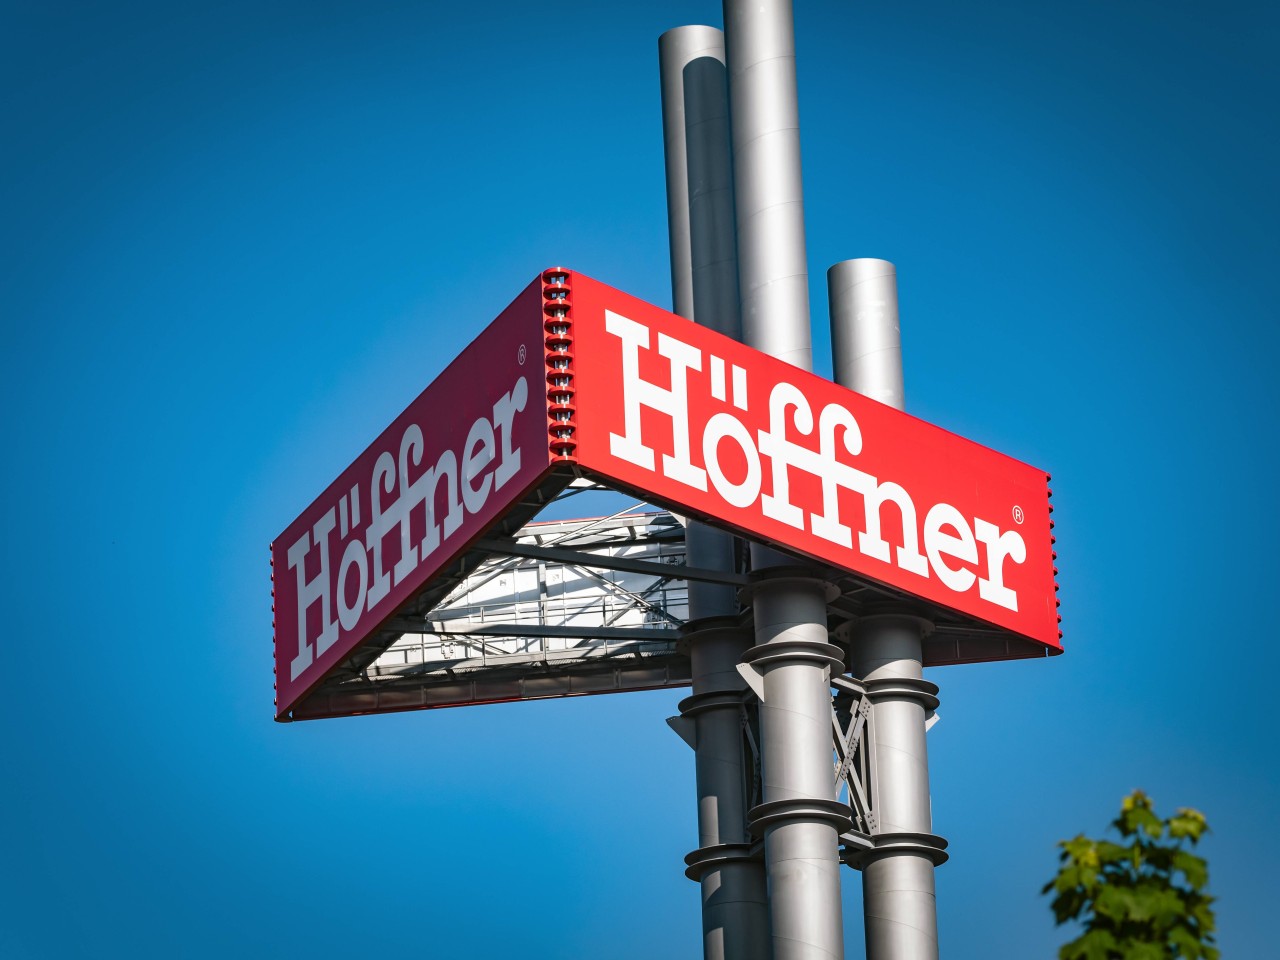  „Höffner“ eröffnet ein neues Möbelhaus in Kiel (Symbolbild).